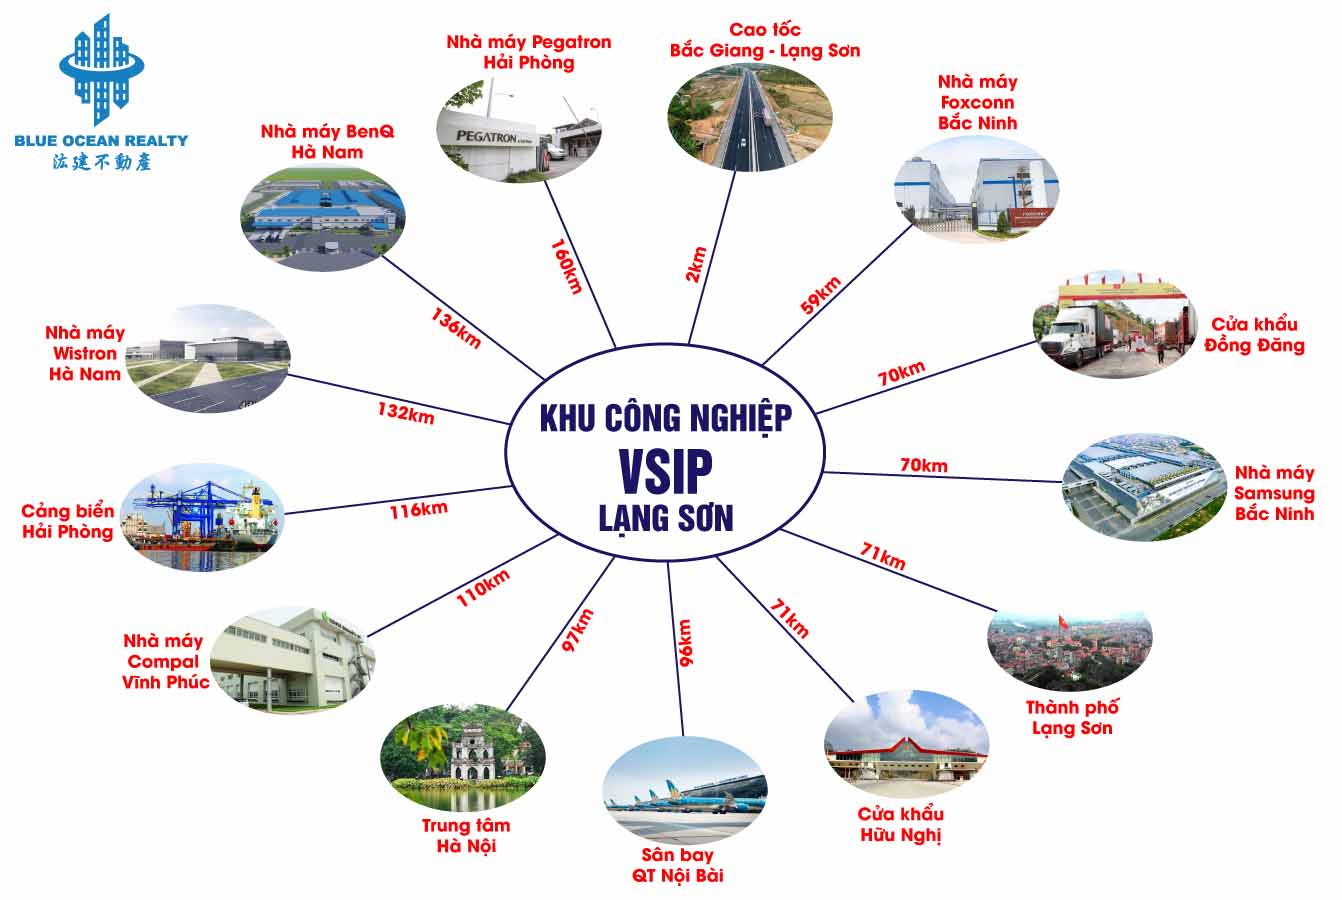 Khu công nghiệp (KCN) VSIP - Lạng Sơn